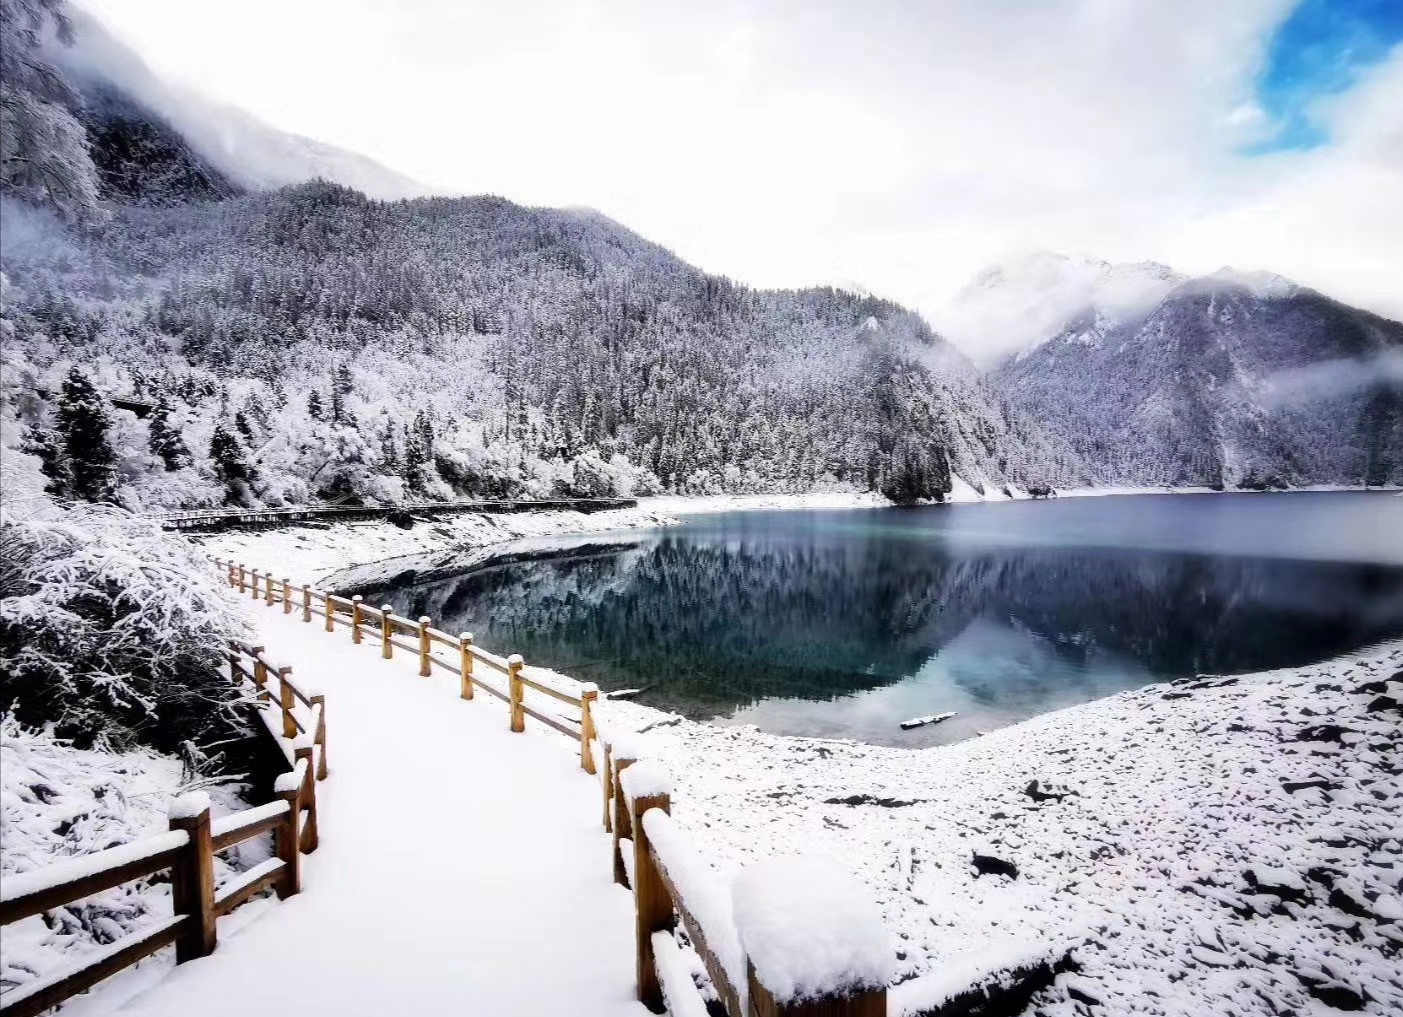 jiuzhaigou in winter_01.jpg